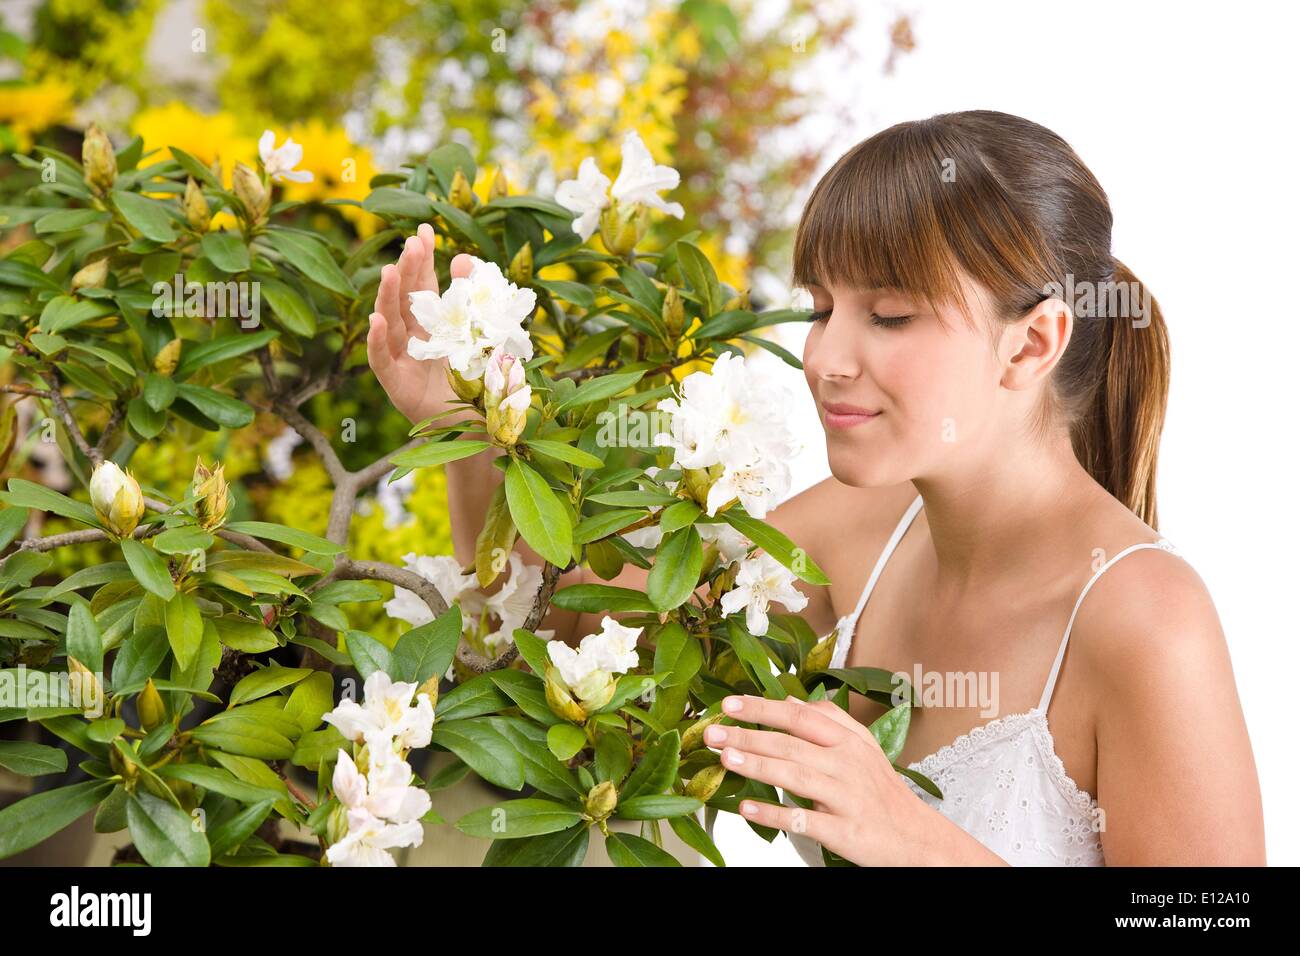 01 maggio 2010 - 1 Maggio 2010 - Ritratto di donna profumati fiori di rododendro fiore su sfondo bianco Foto Stock